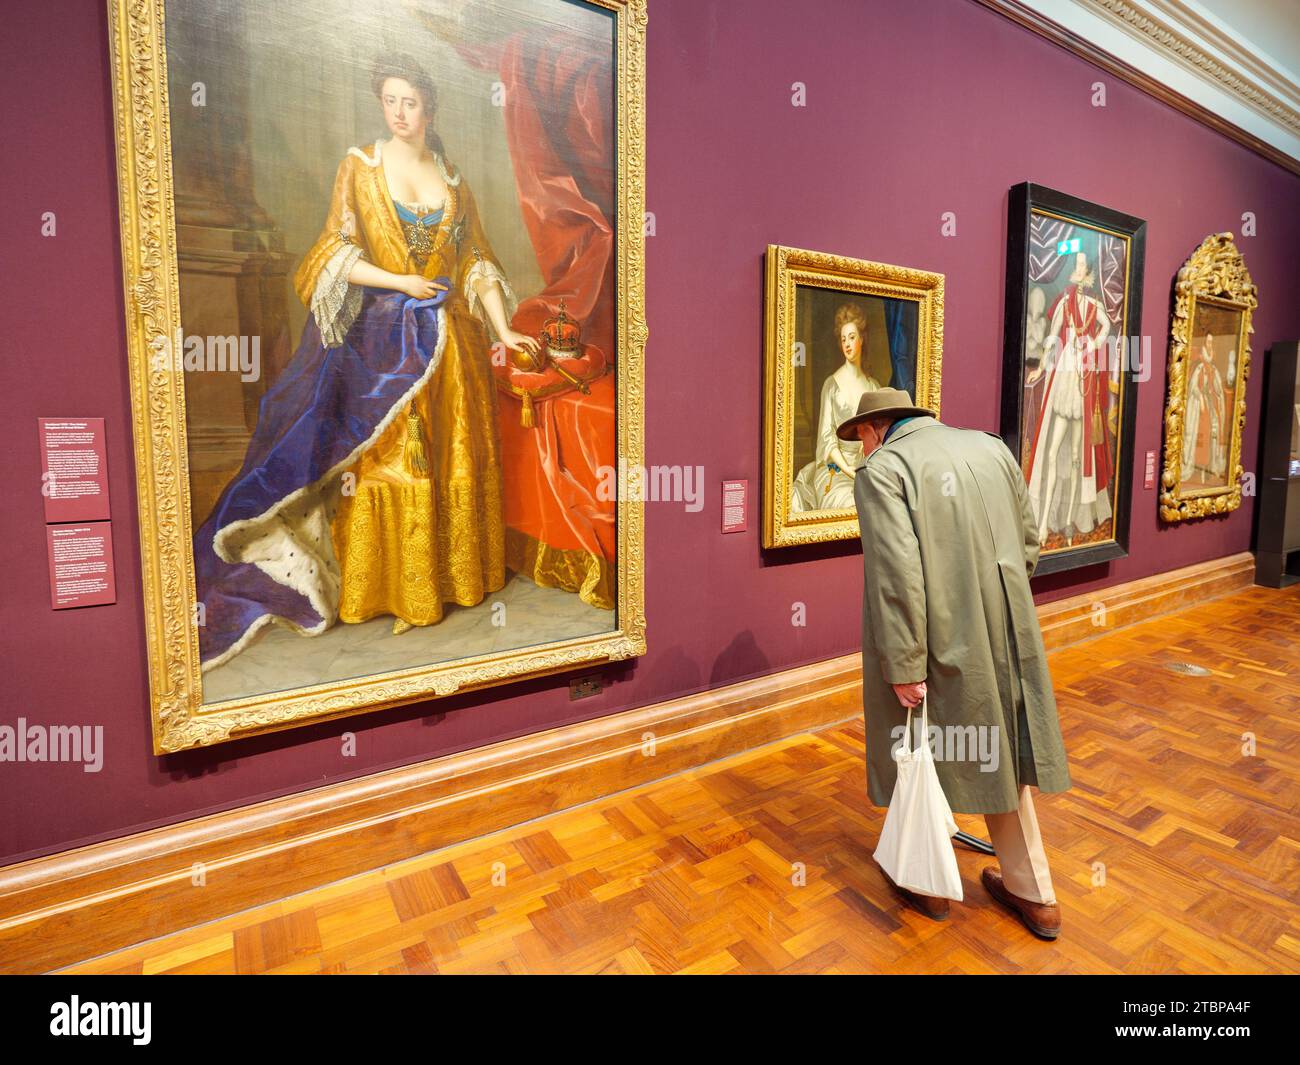 Visiteur du musée regardant les peintures historiques à l'intérieur de la National Portrait Gallery, Londres, Royaume-Uni Banque D'Images